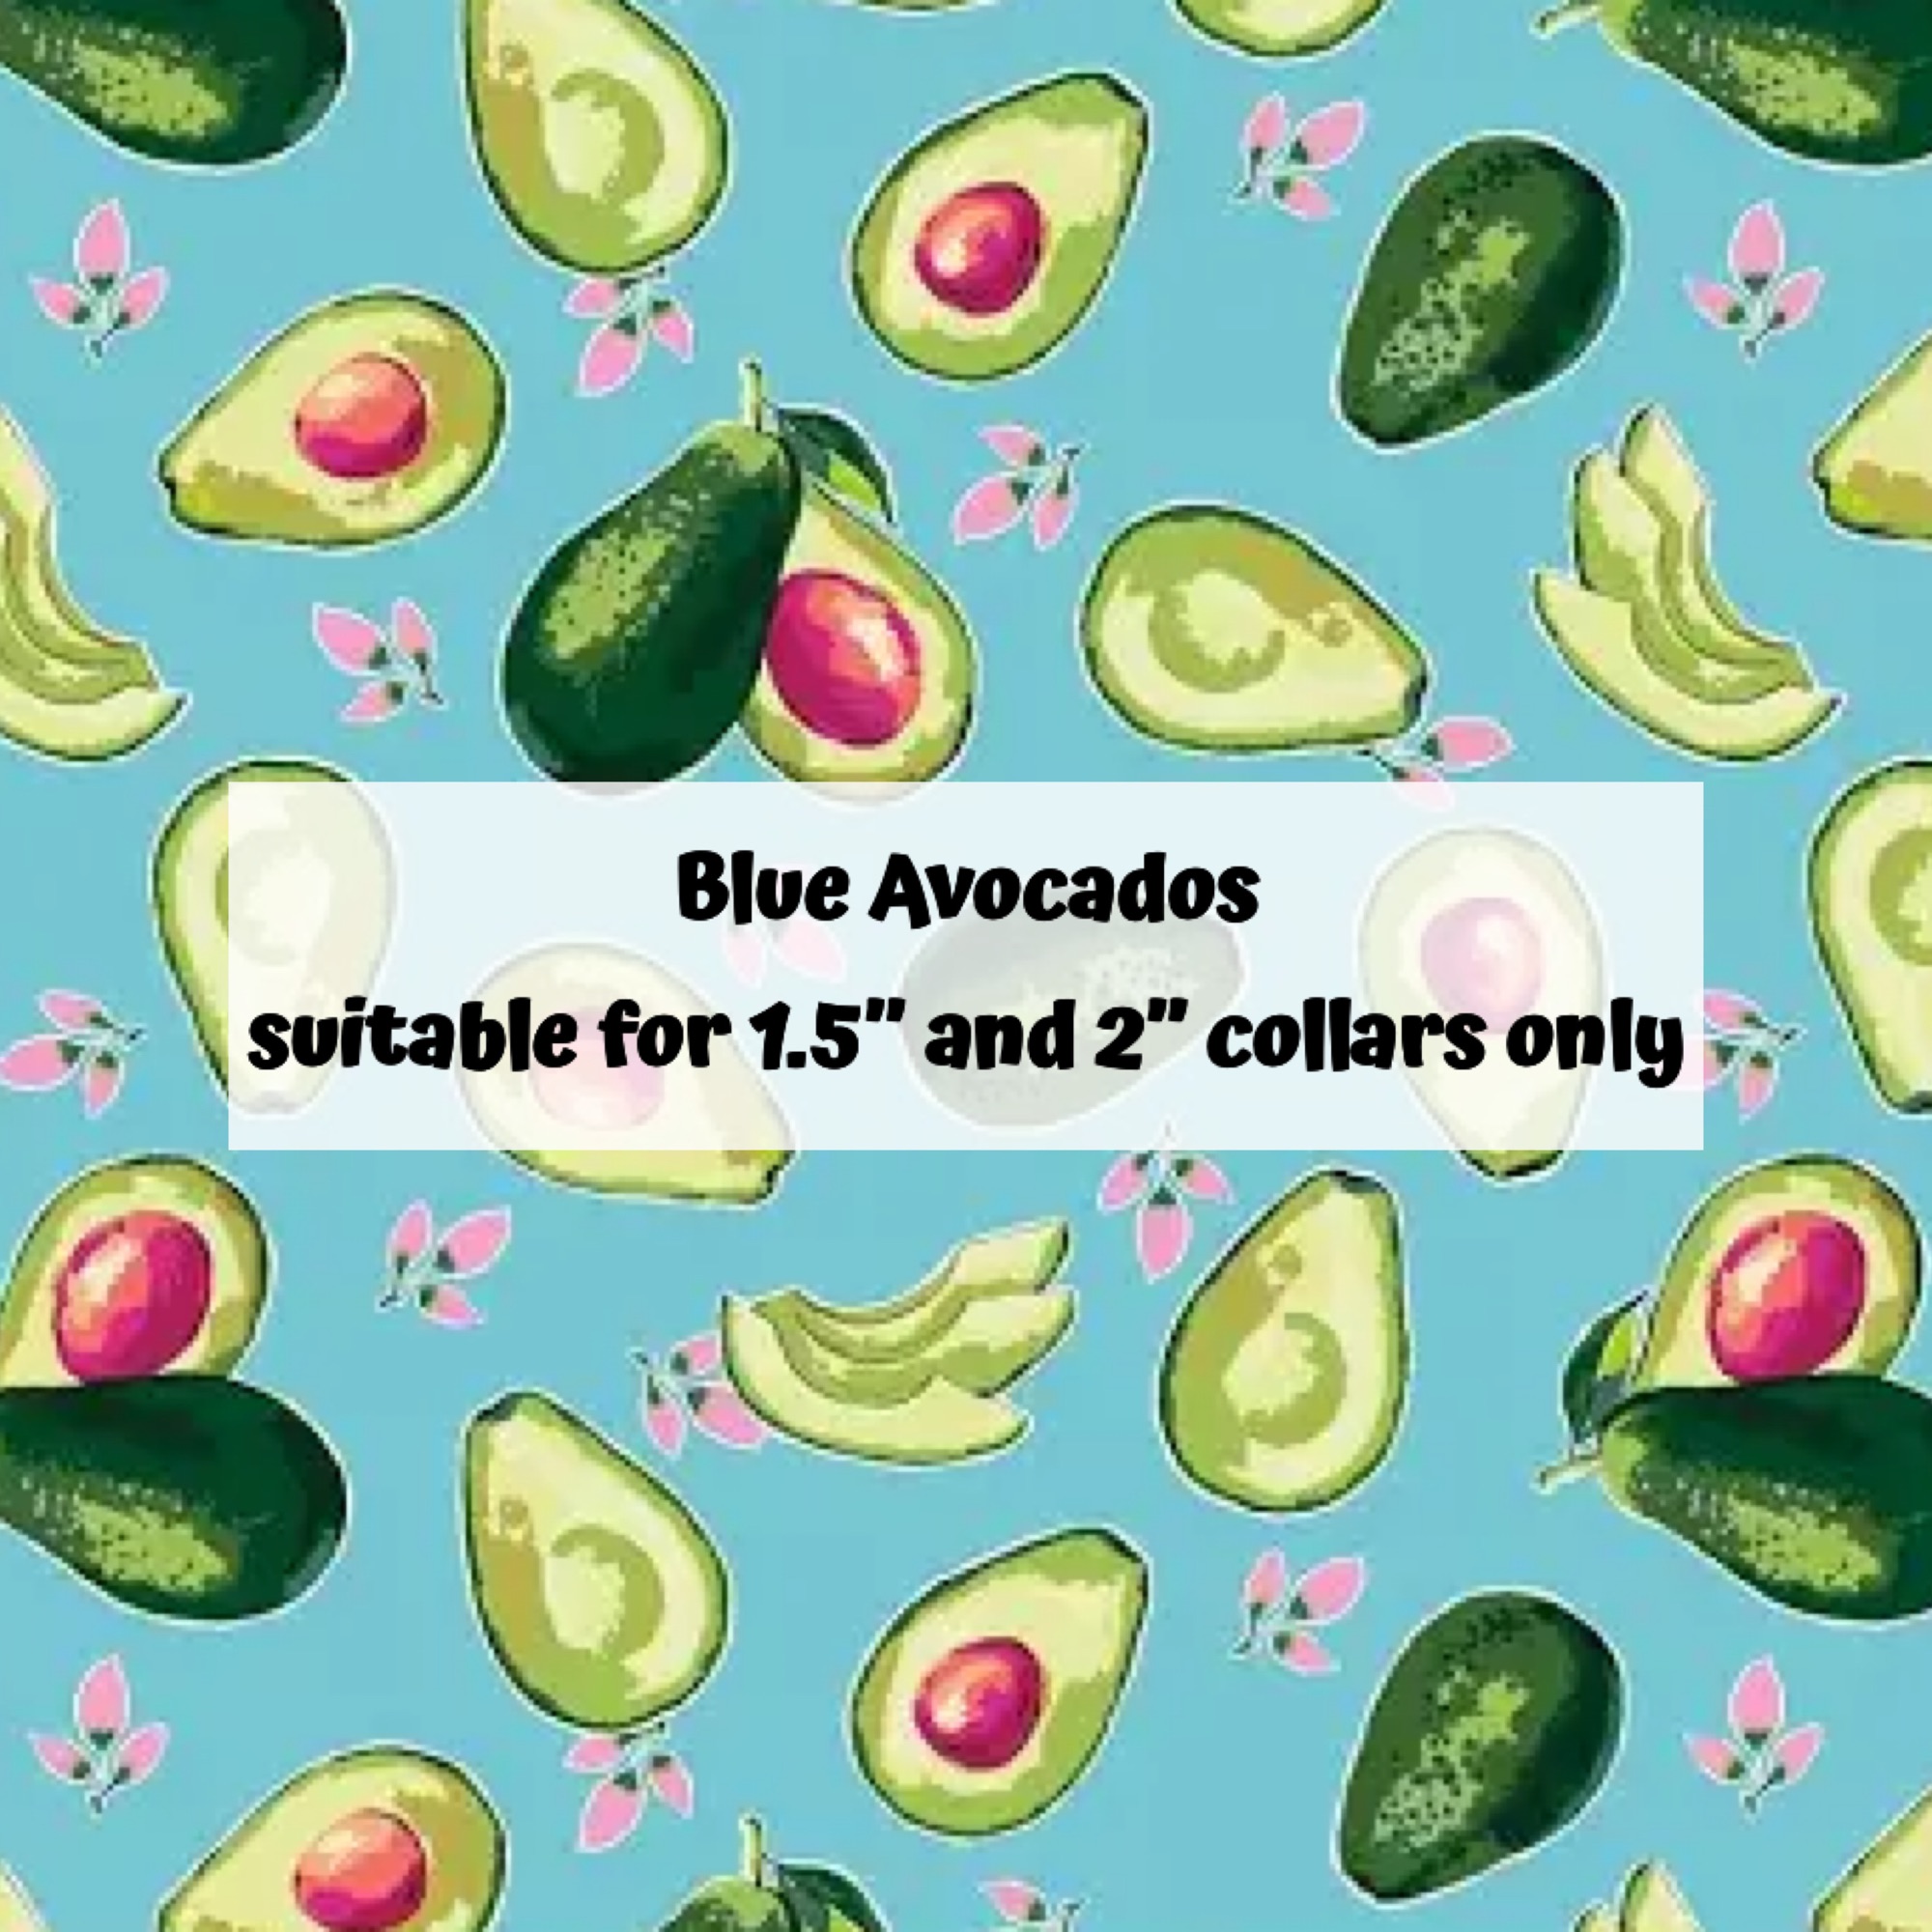 Blue Avocados